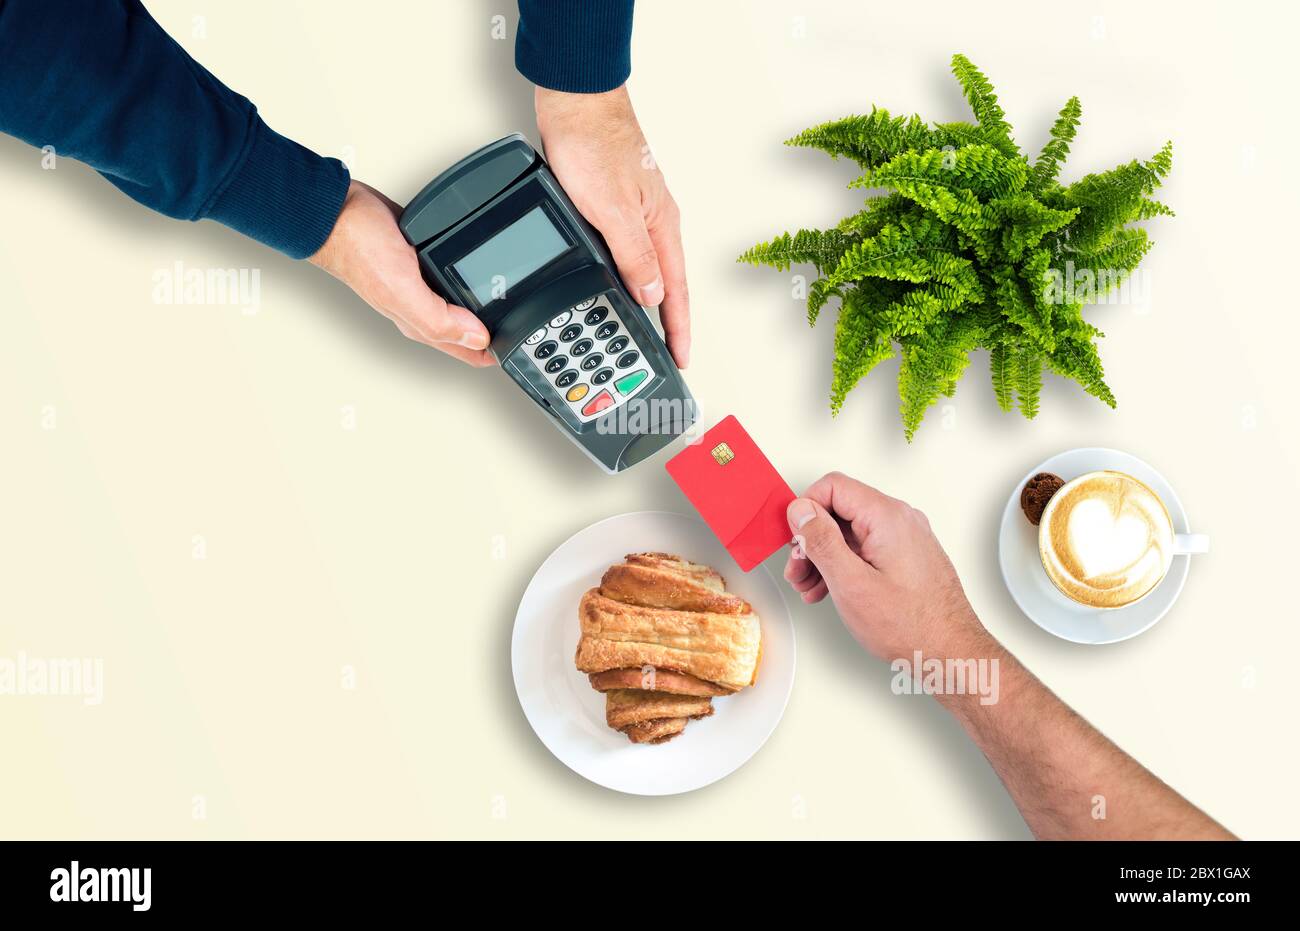 Zahlung im Restaurant oder Café mit einer Kreditkarte oder Debitkarte Konzept, Draufsicht des Kunden, der Karte an Person mit Kreditkarte Leser Stockfoto